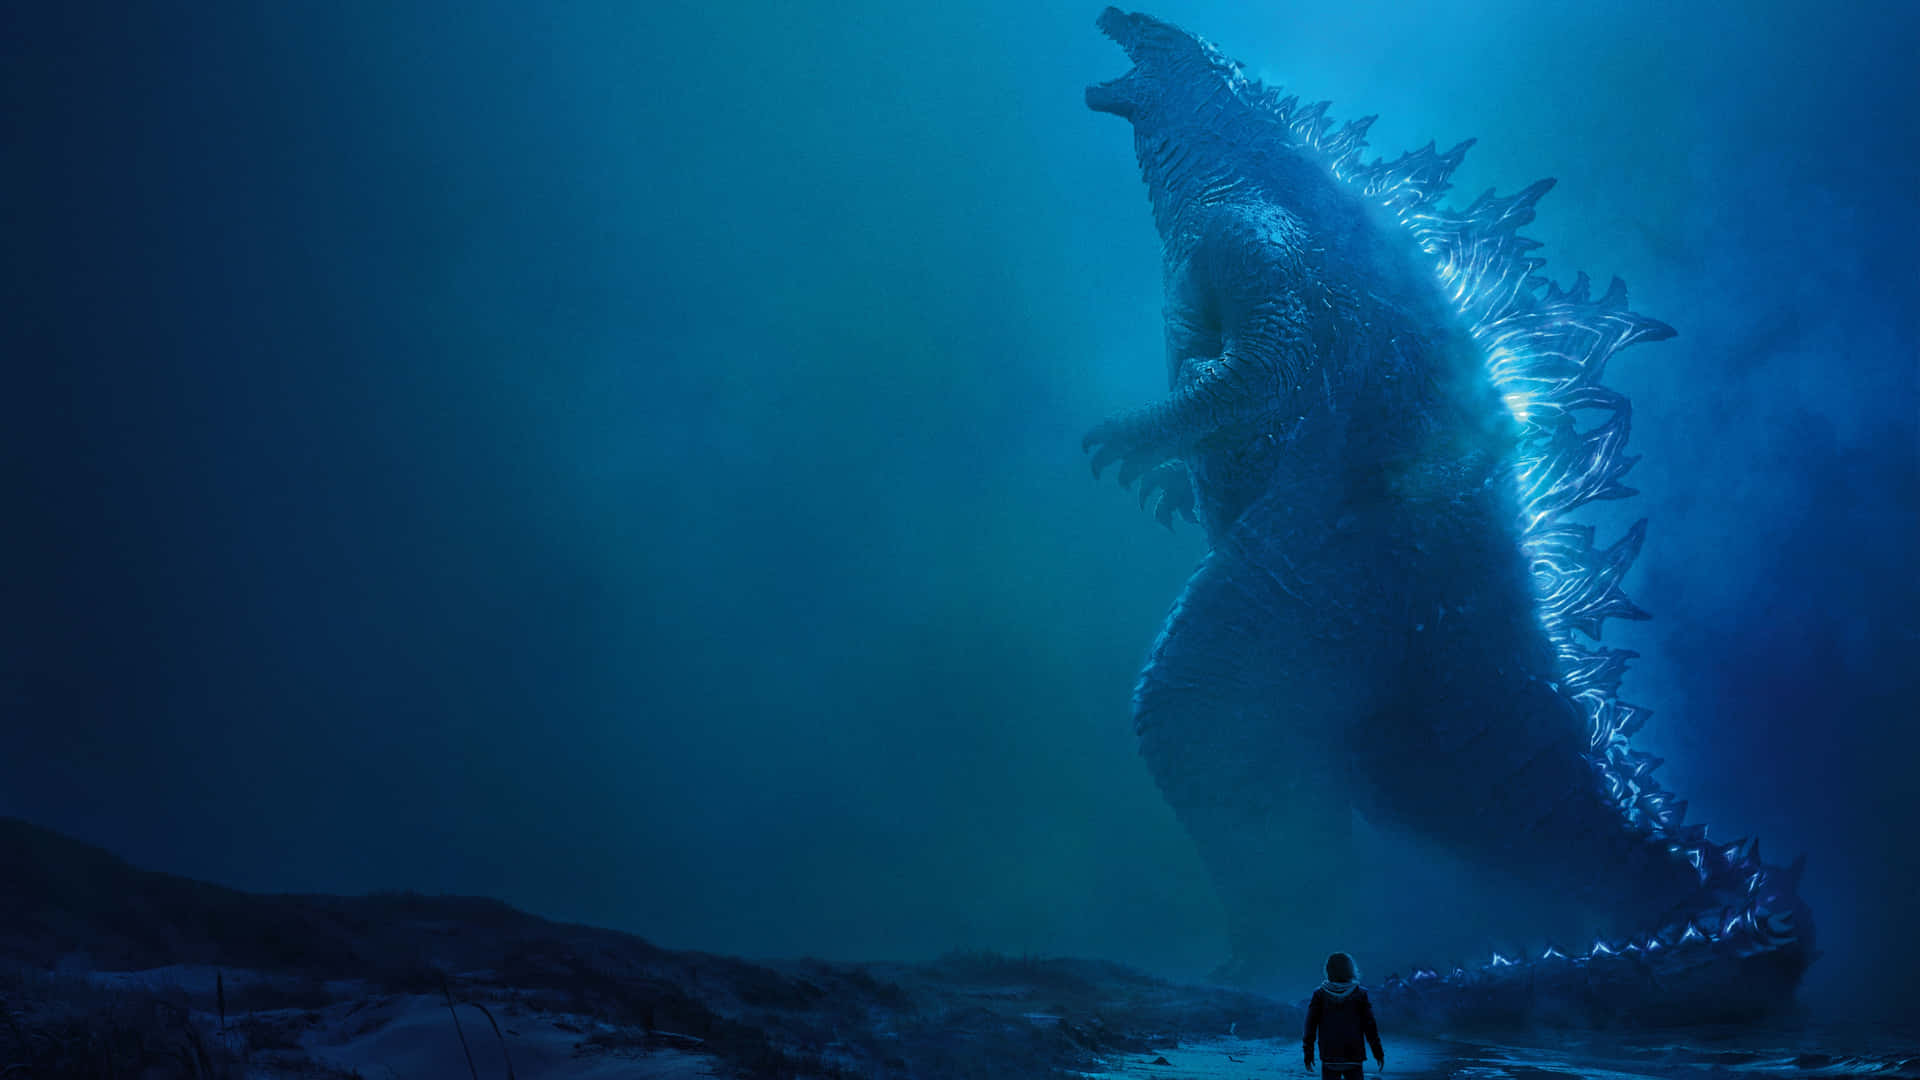 Godzillaneon Blå På Spikar Bild.